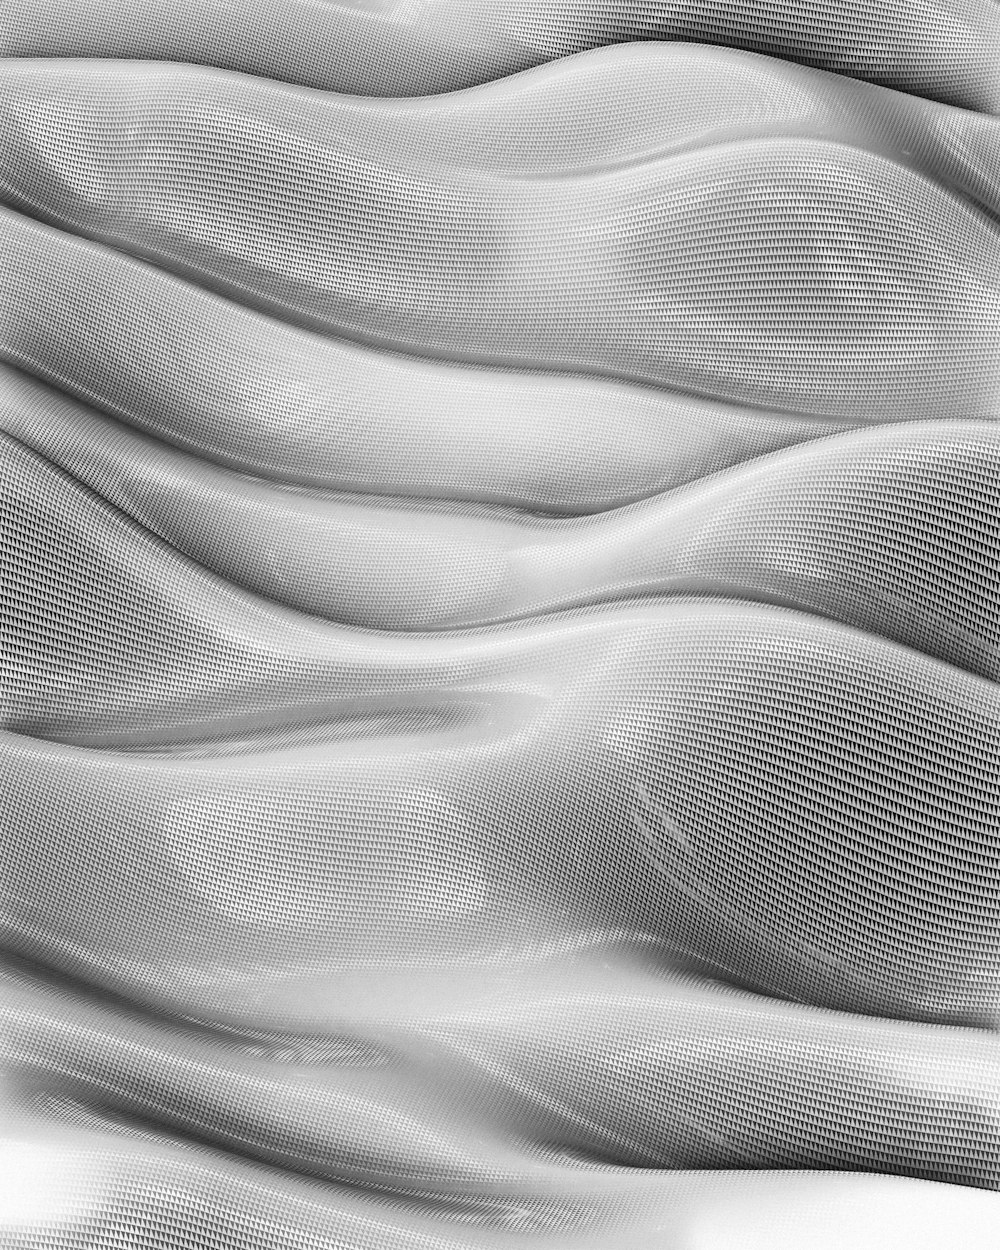 ein Schwarz-Weiß-Foto einer welligen Oberfläche